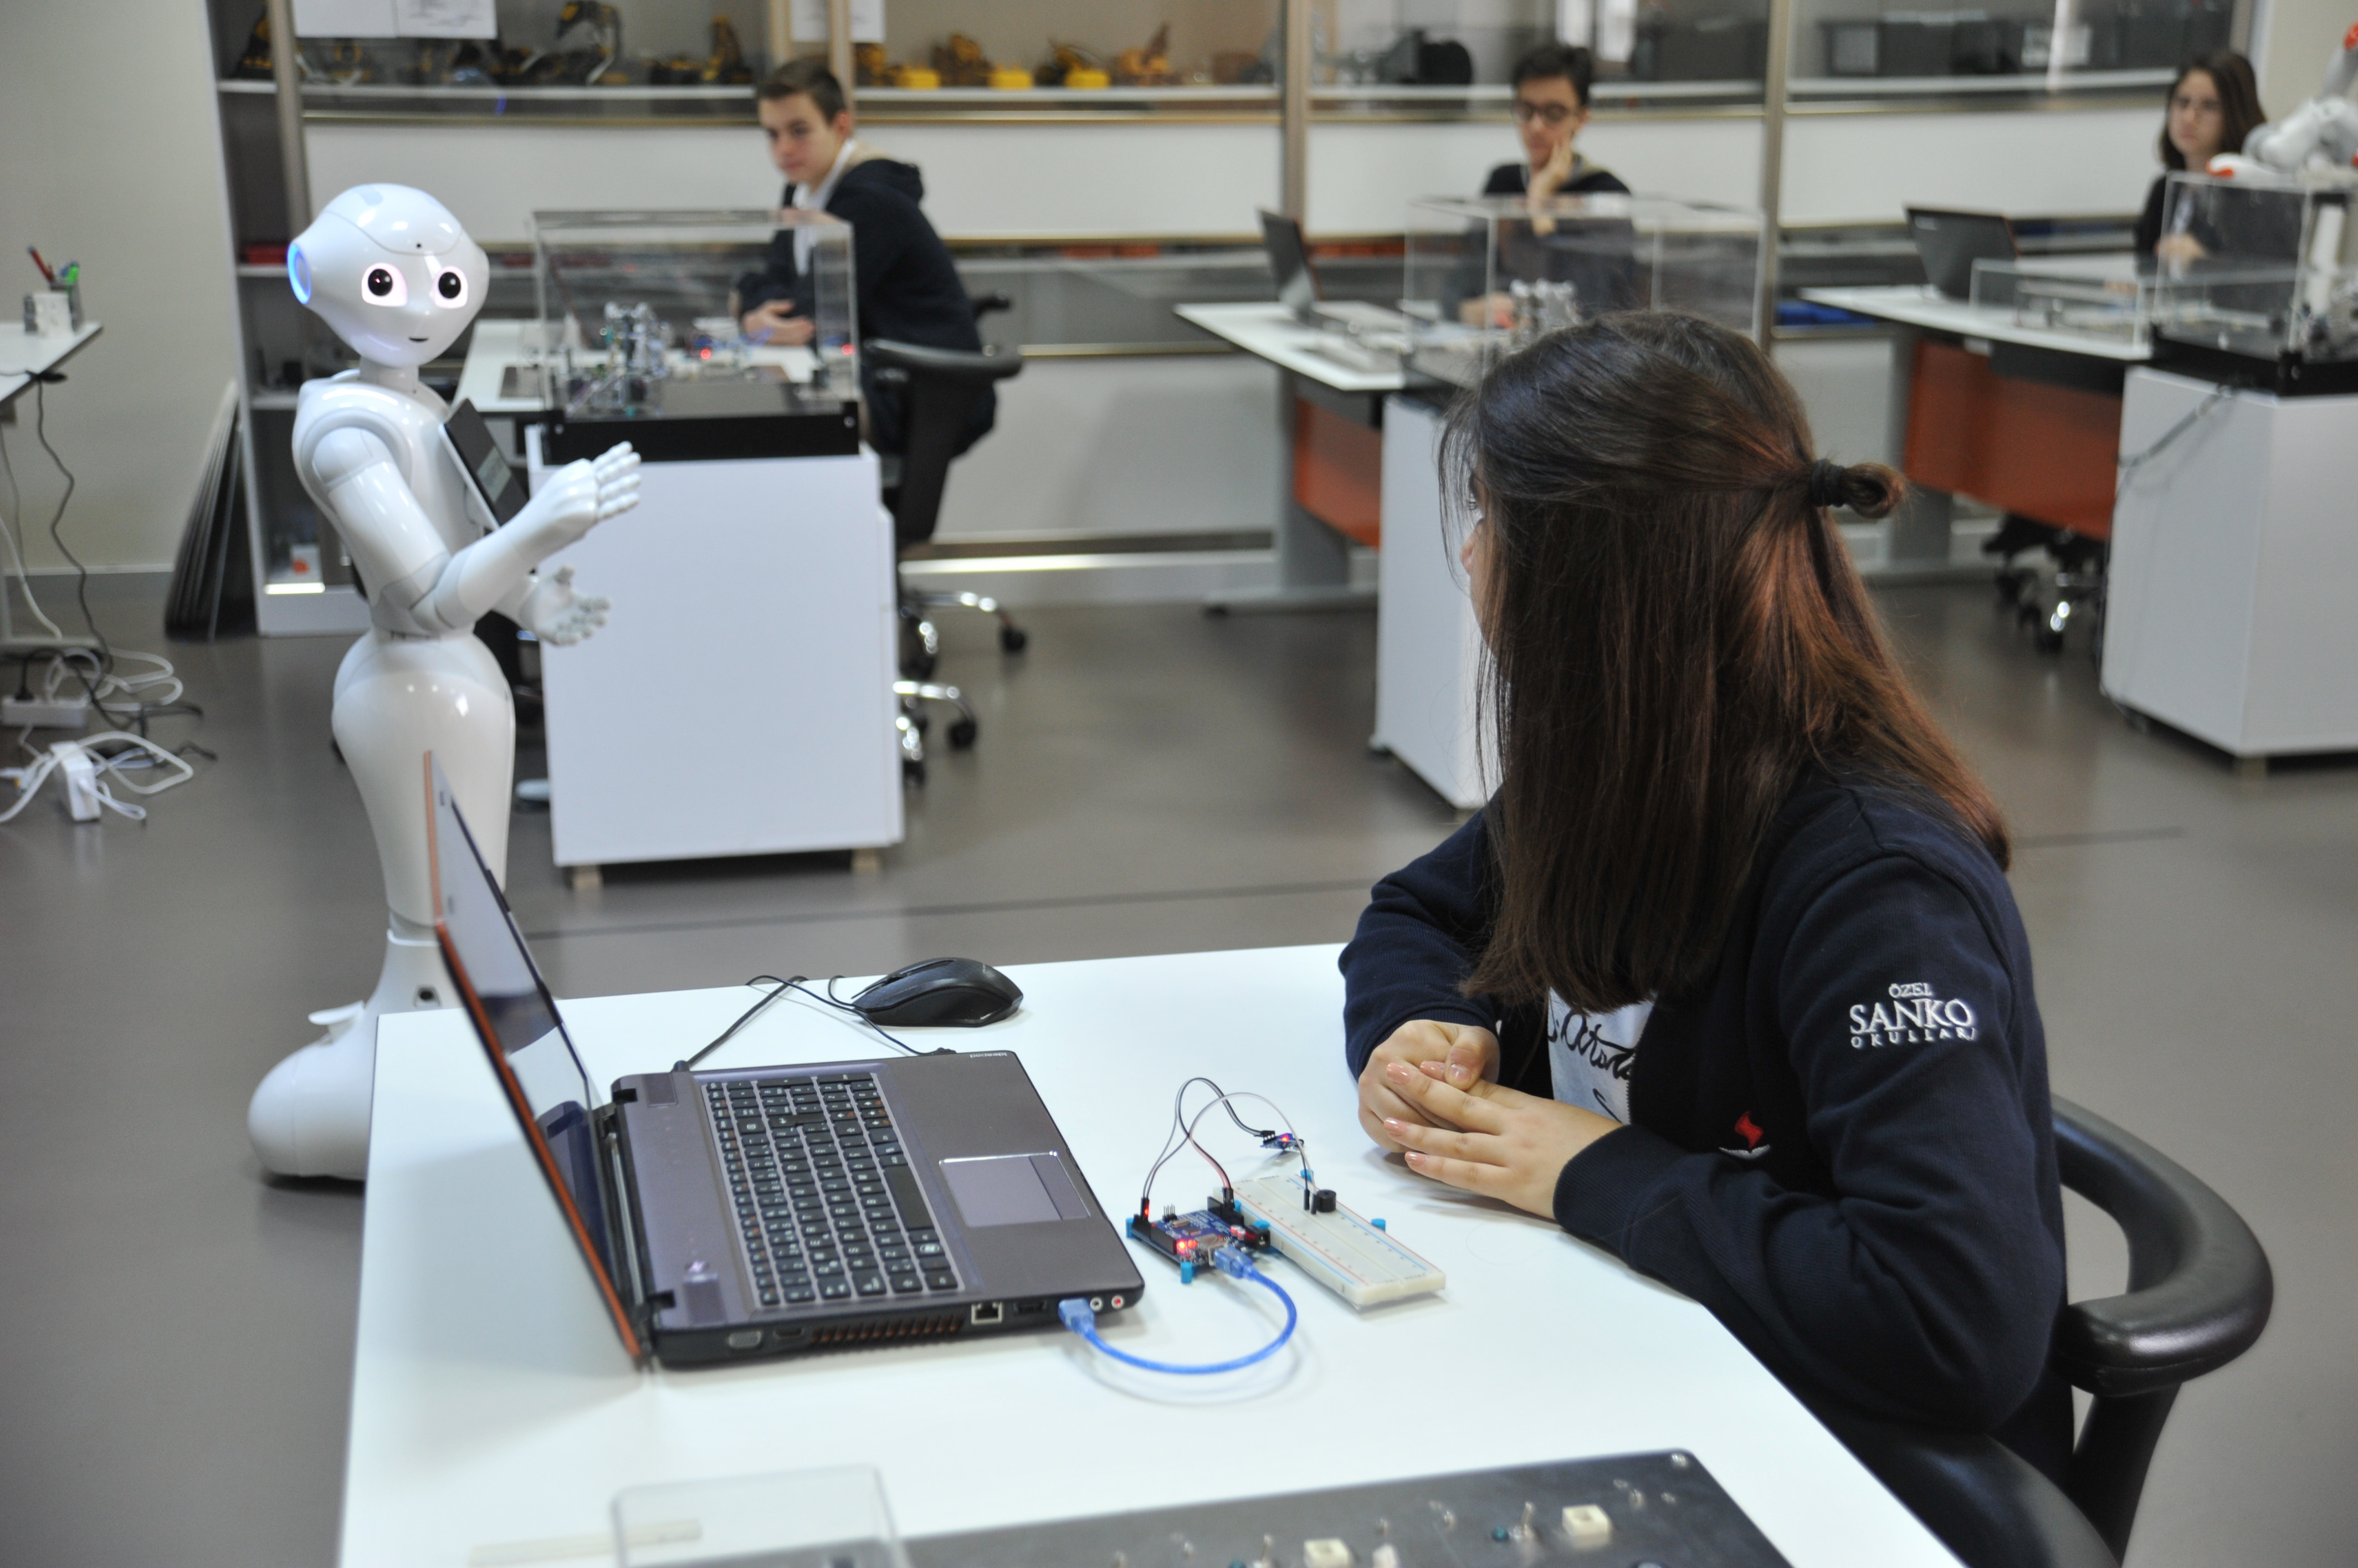 Gaziantep'teki öğrenciler insansı robot ile kodlama öğreniyorlar